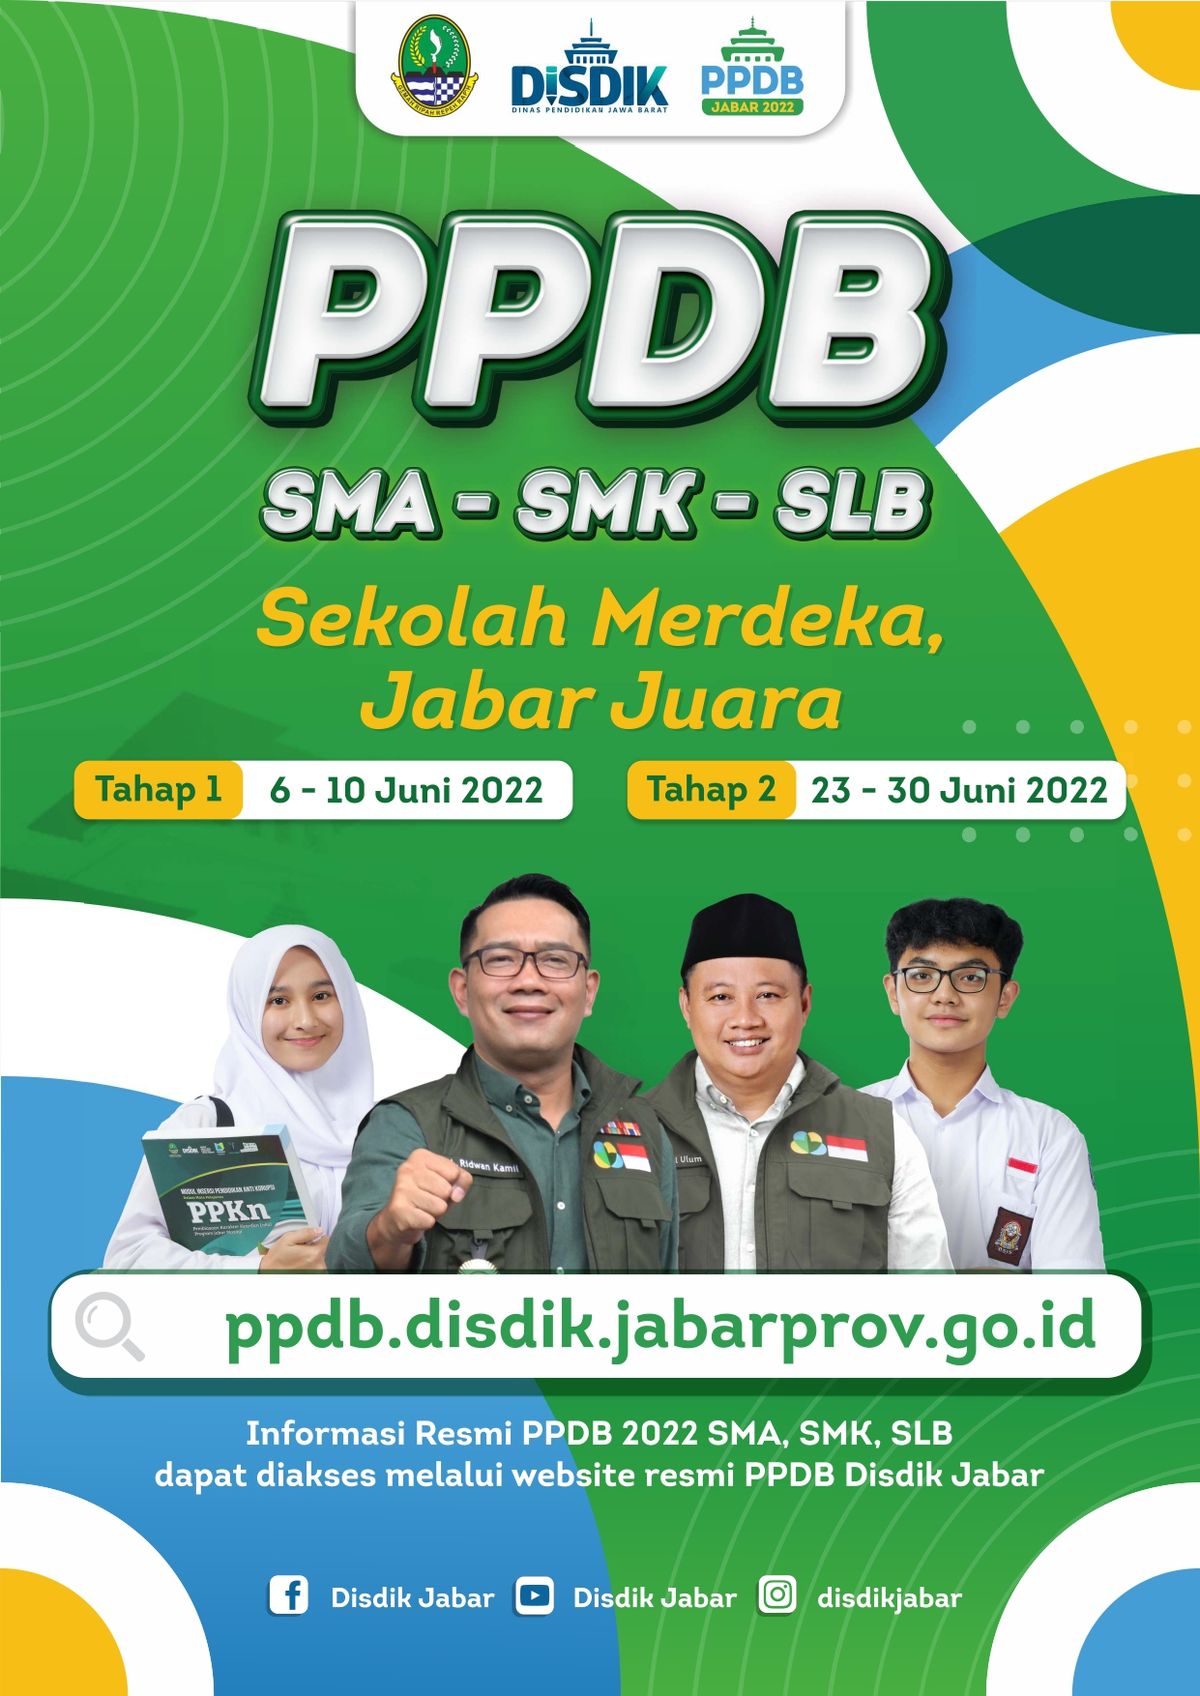 Berikut rangkuman jadwal PPDB Sumut 2022.